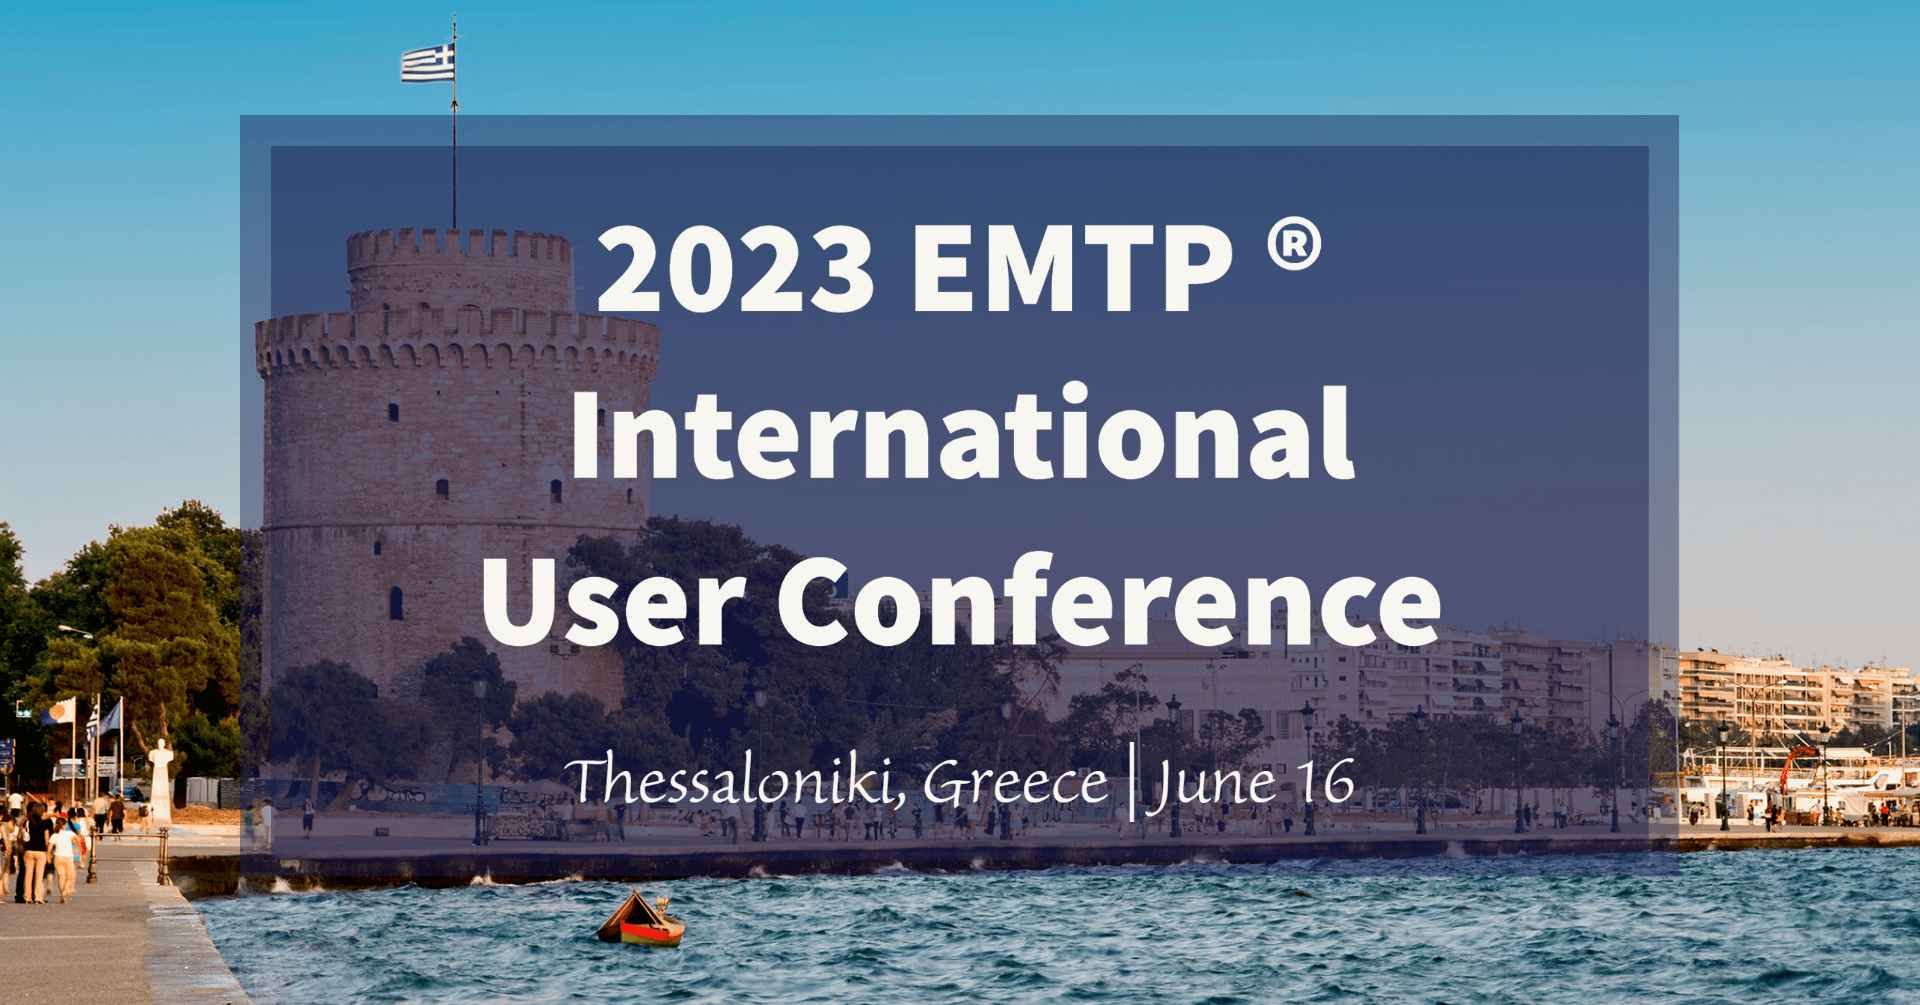 2023 EMTP International User Conference